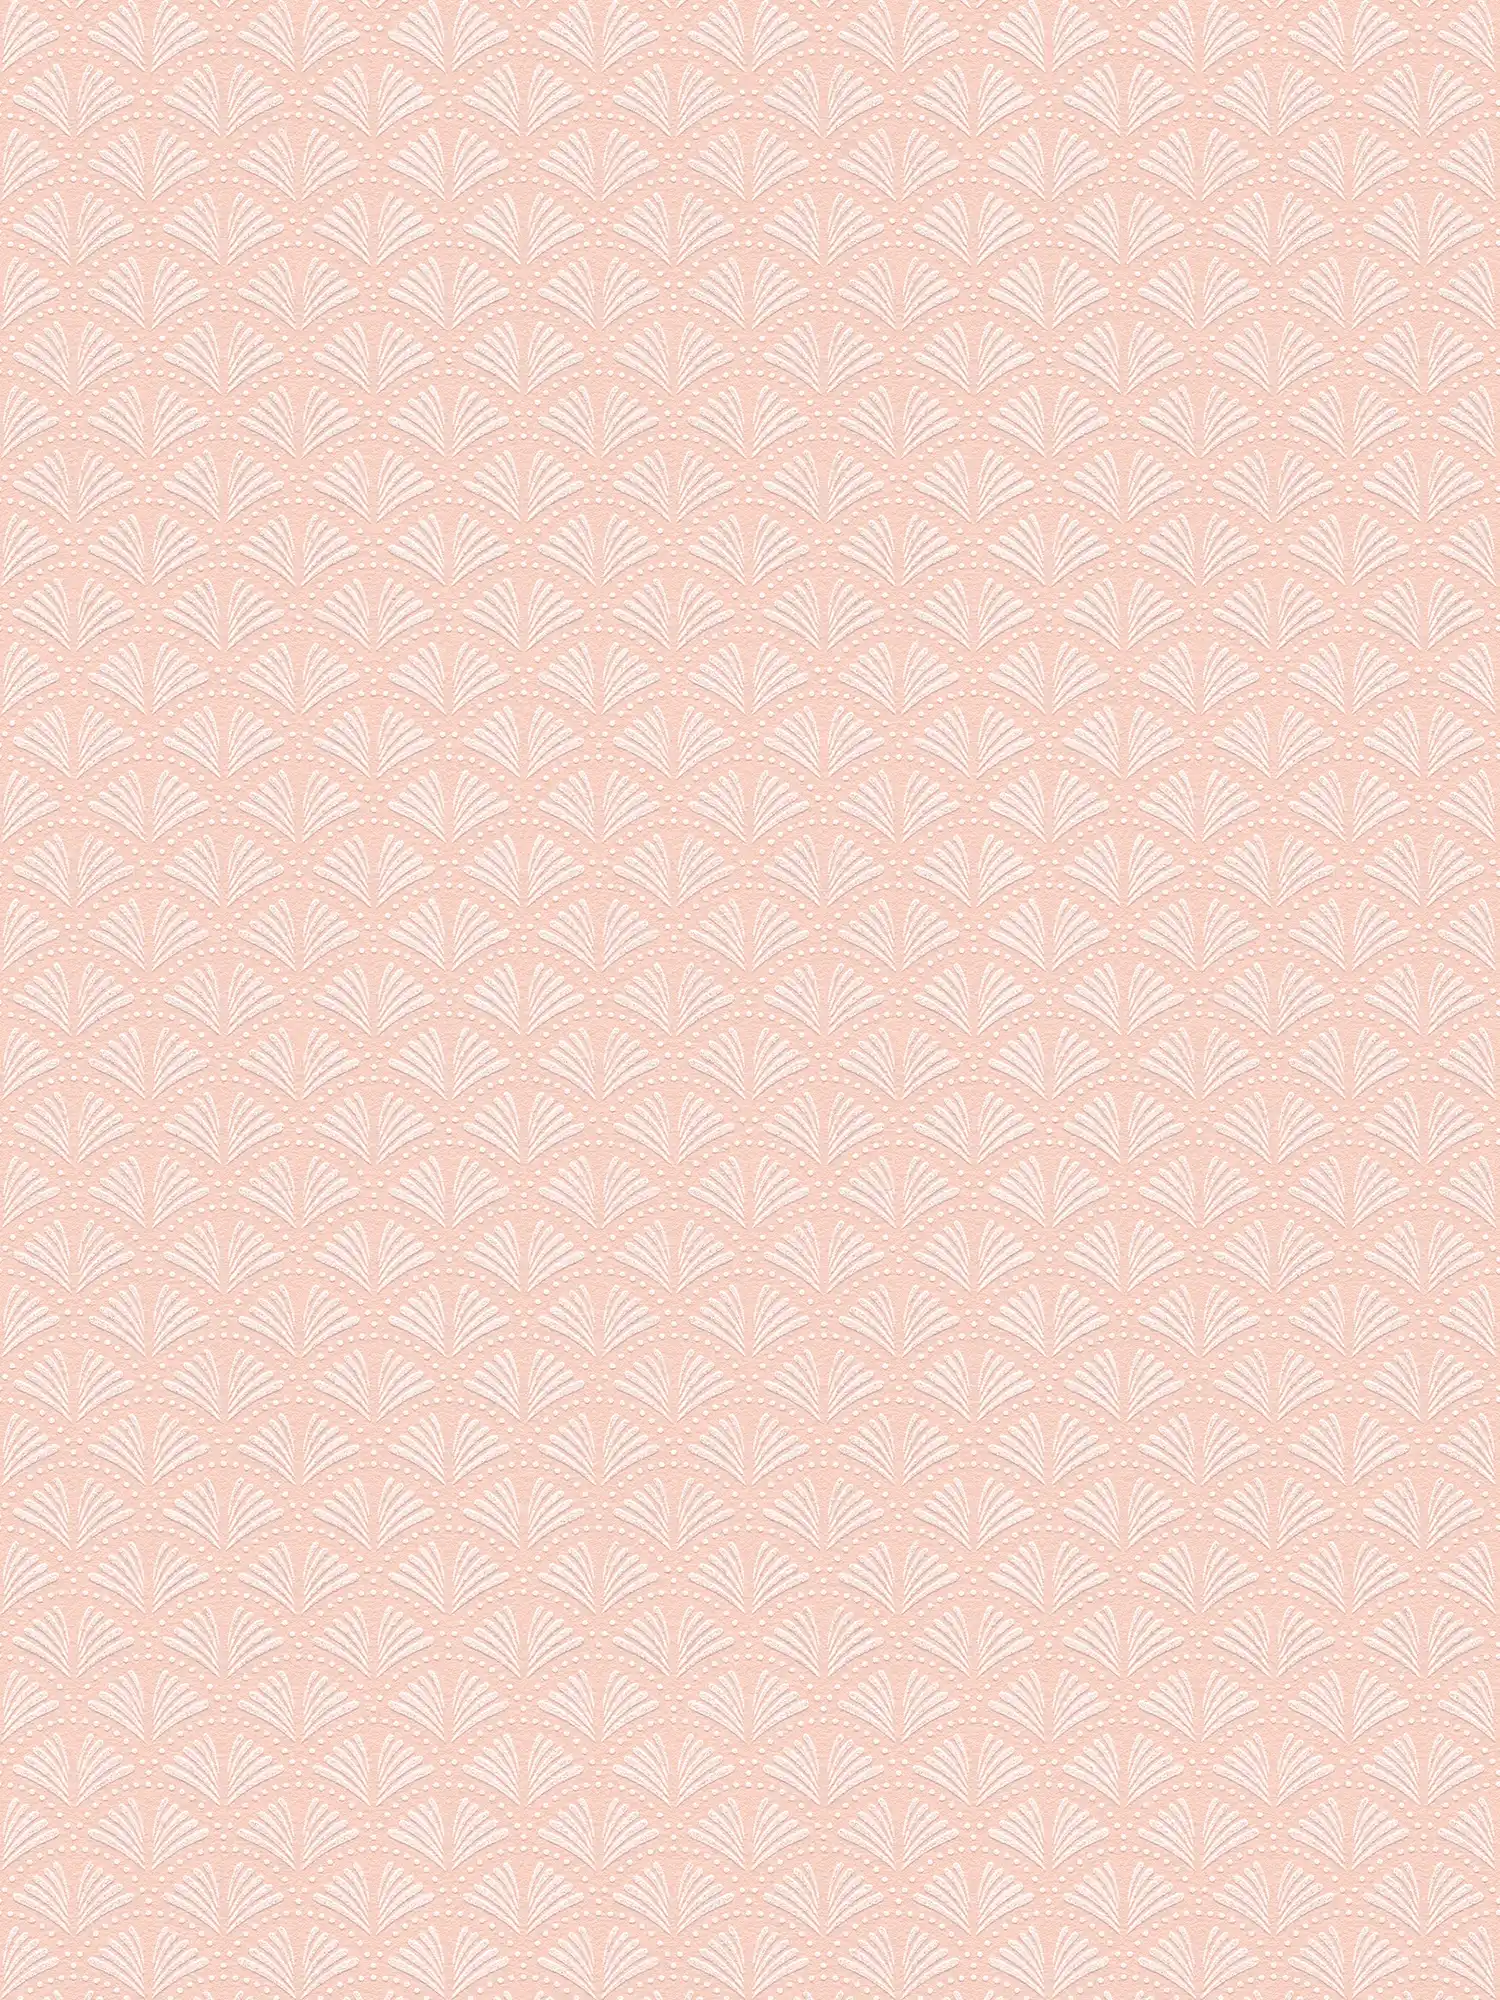 Carta da parati glitterata rosa con design a ventaglio in stile retrò - metallizzata, rosa, bianca
